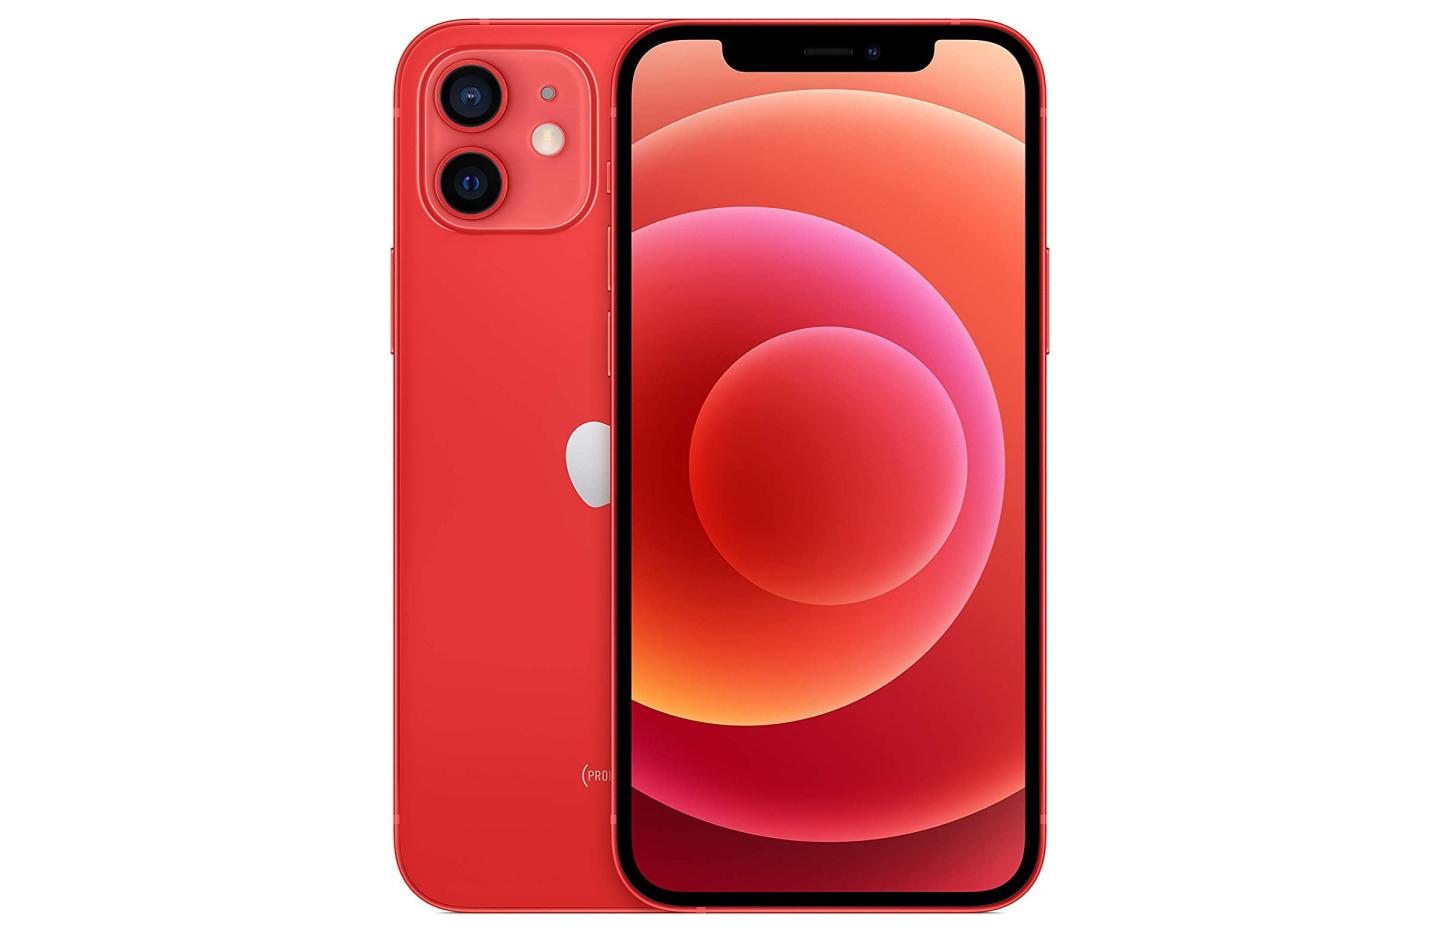 Si vous aimez le rouge, cette offre pour l’iPhone 12 devrait vous plaire